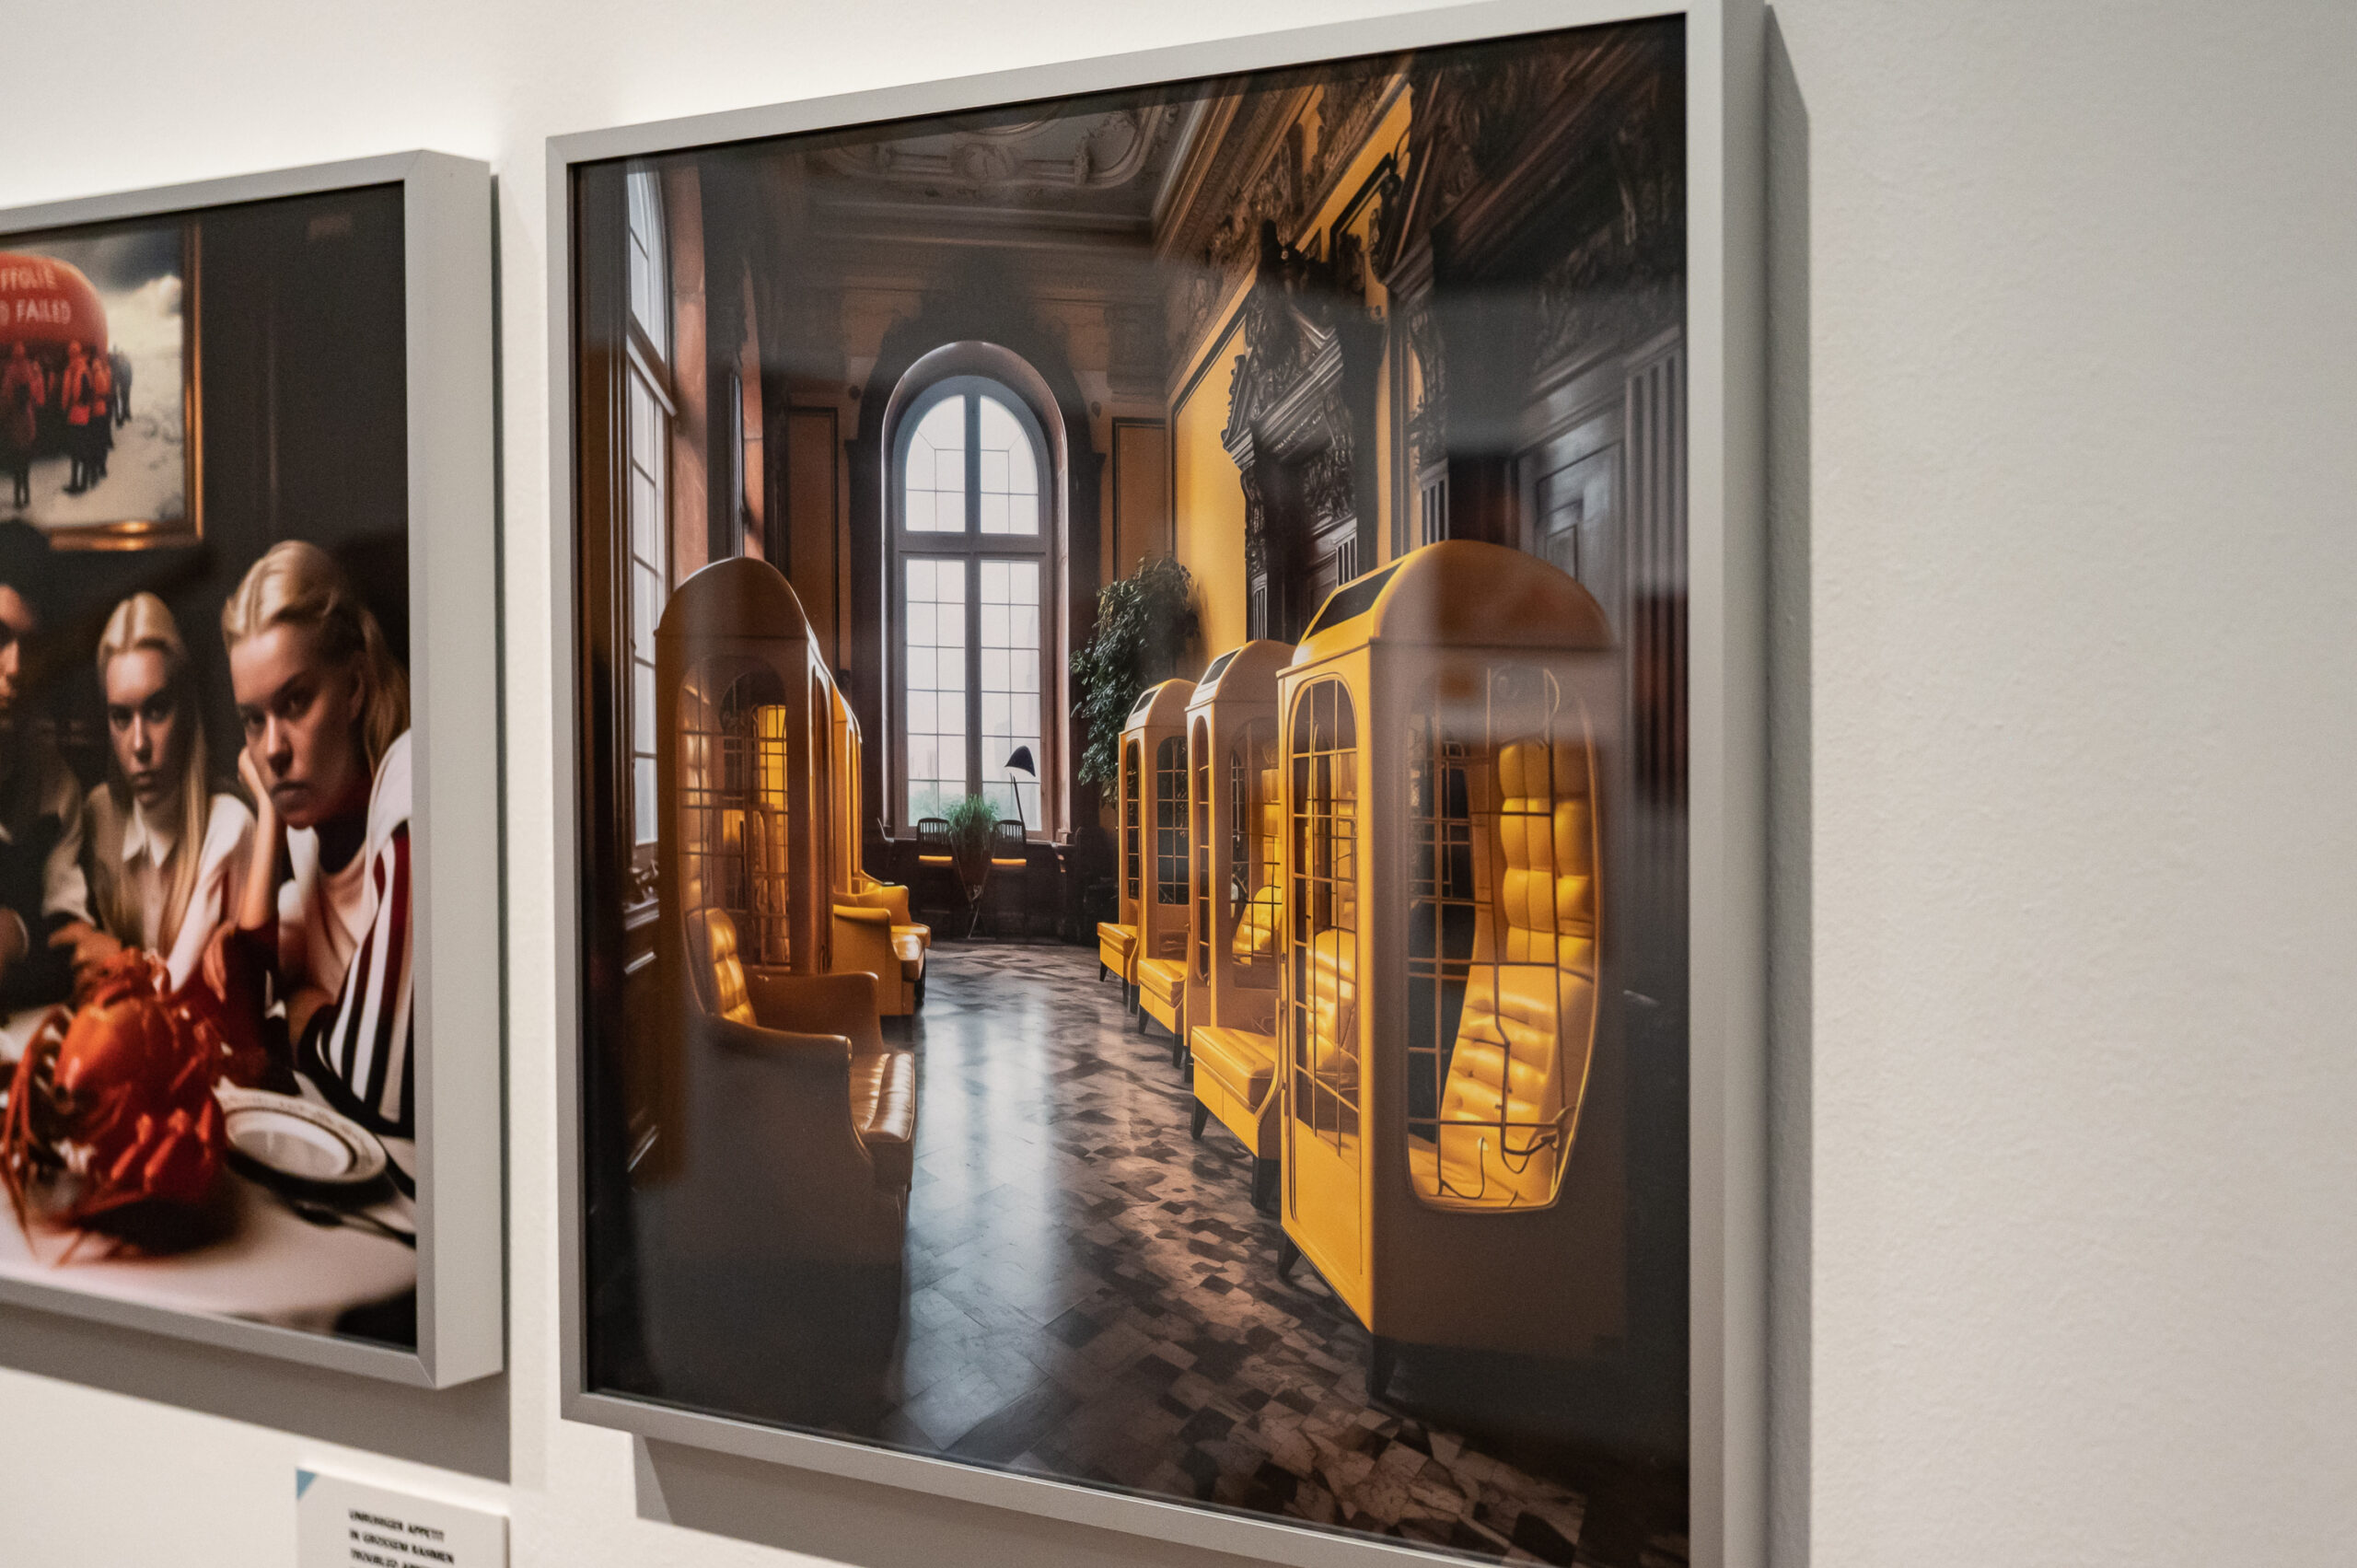 Blick in die Ausstellung "New Realities - Wie Künstliche Intelligenz und abbildet" im Museum für Kommunikation Nürnberg